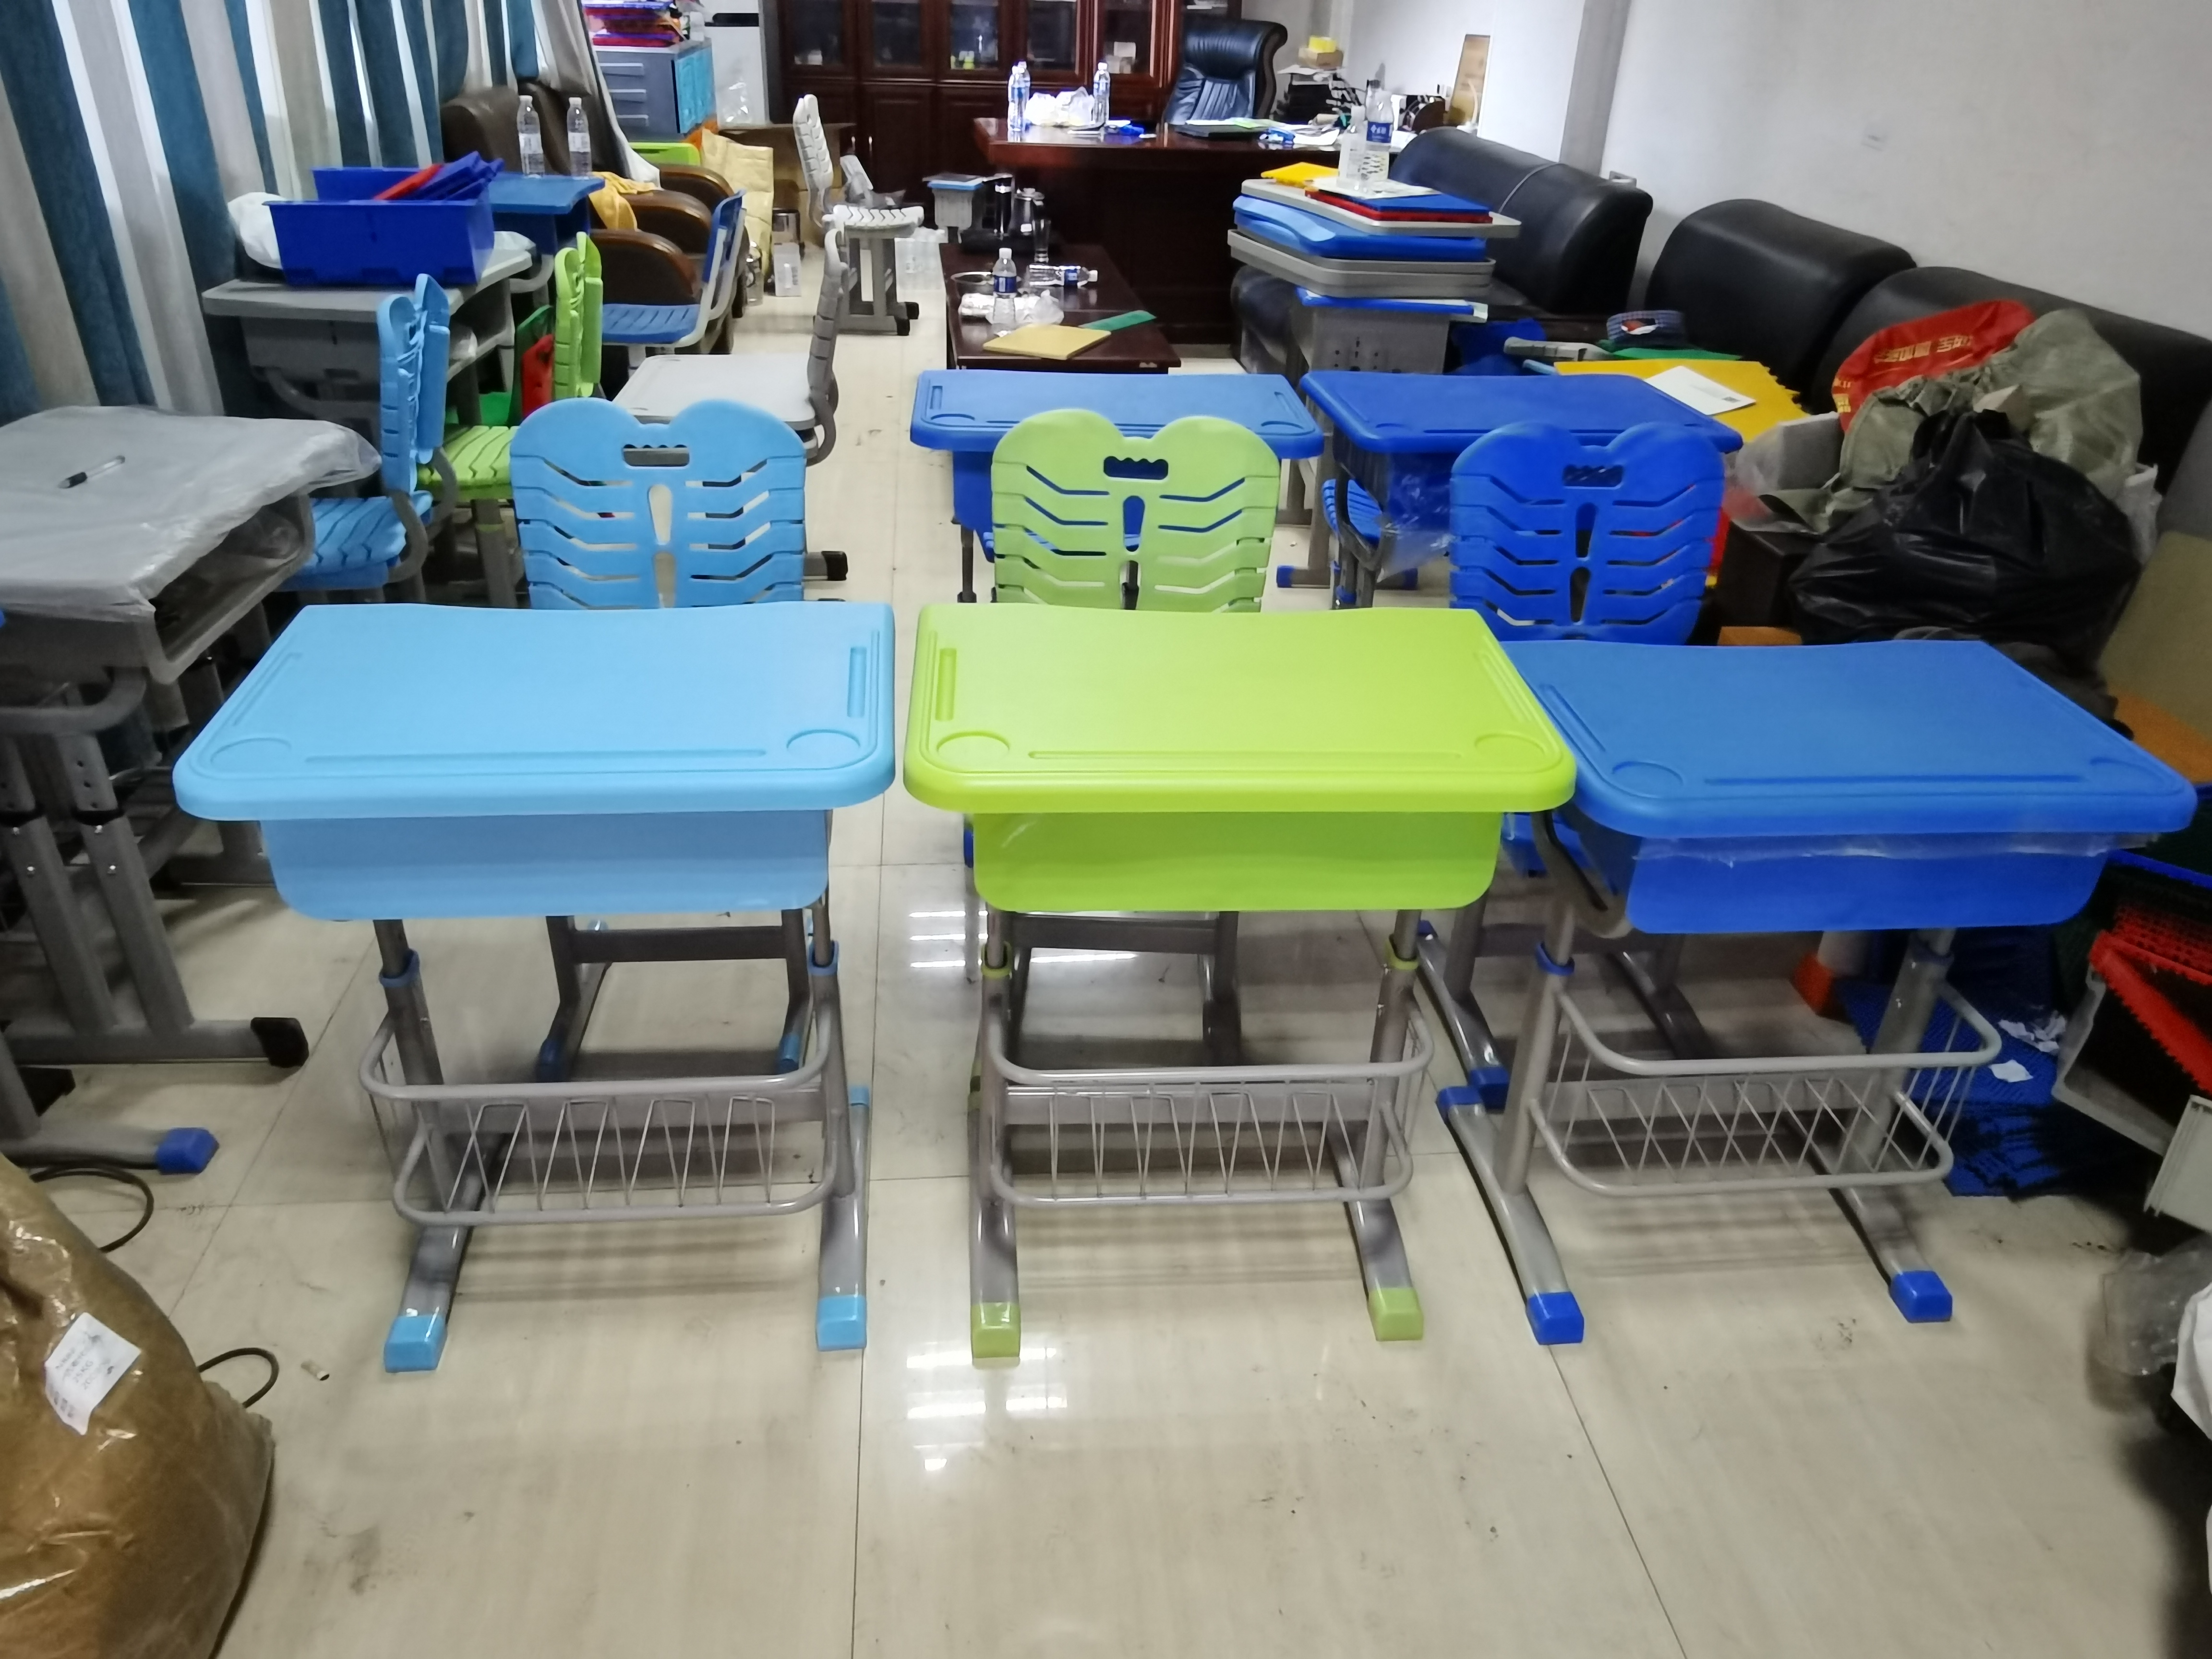 郑州厂家直销简约升降幼儿园课桌椅儿童靠背椅培训课桌椅